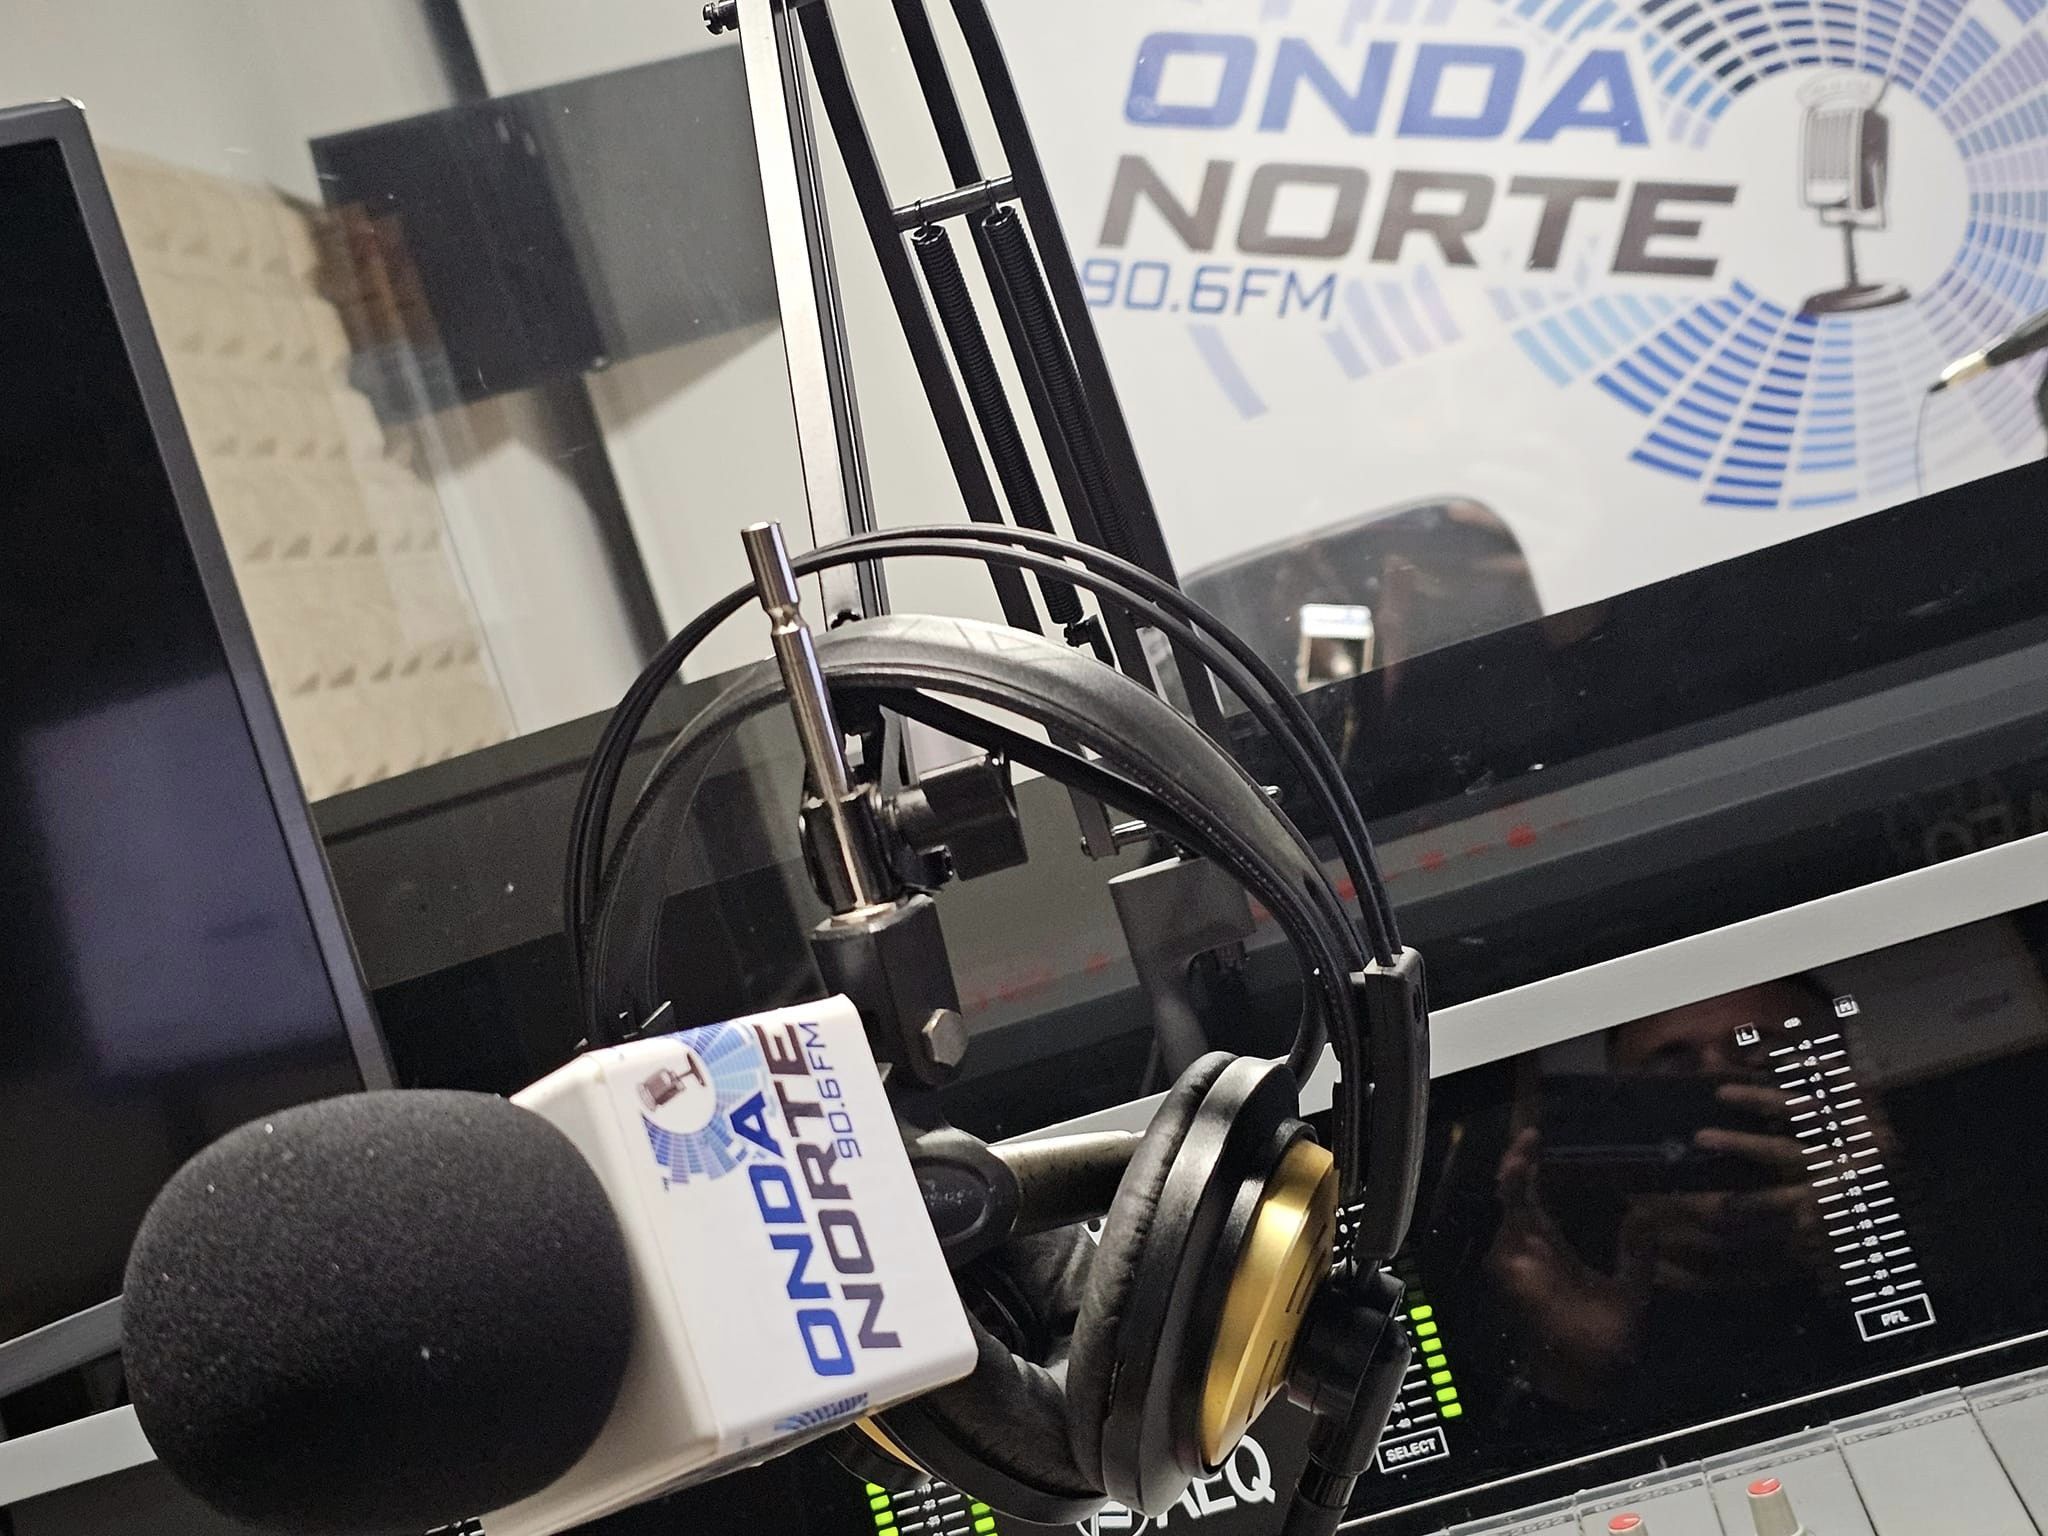 ONDA NORTE FM 90.6